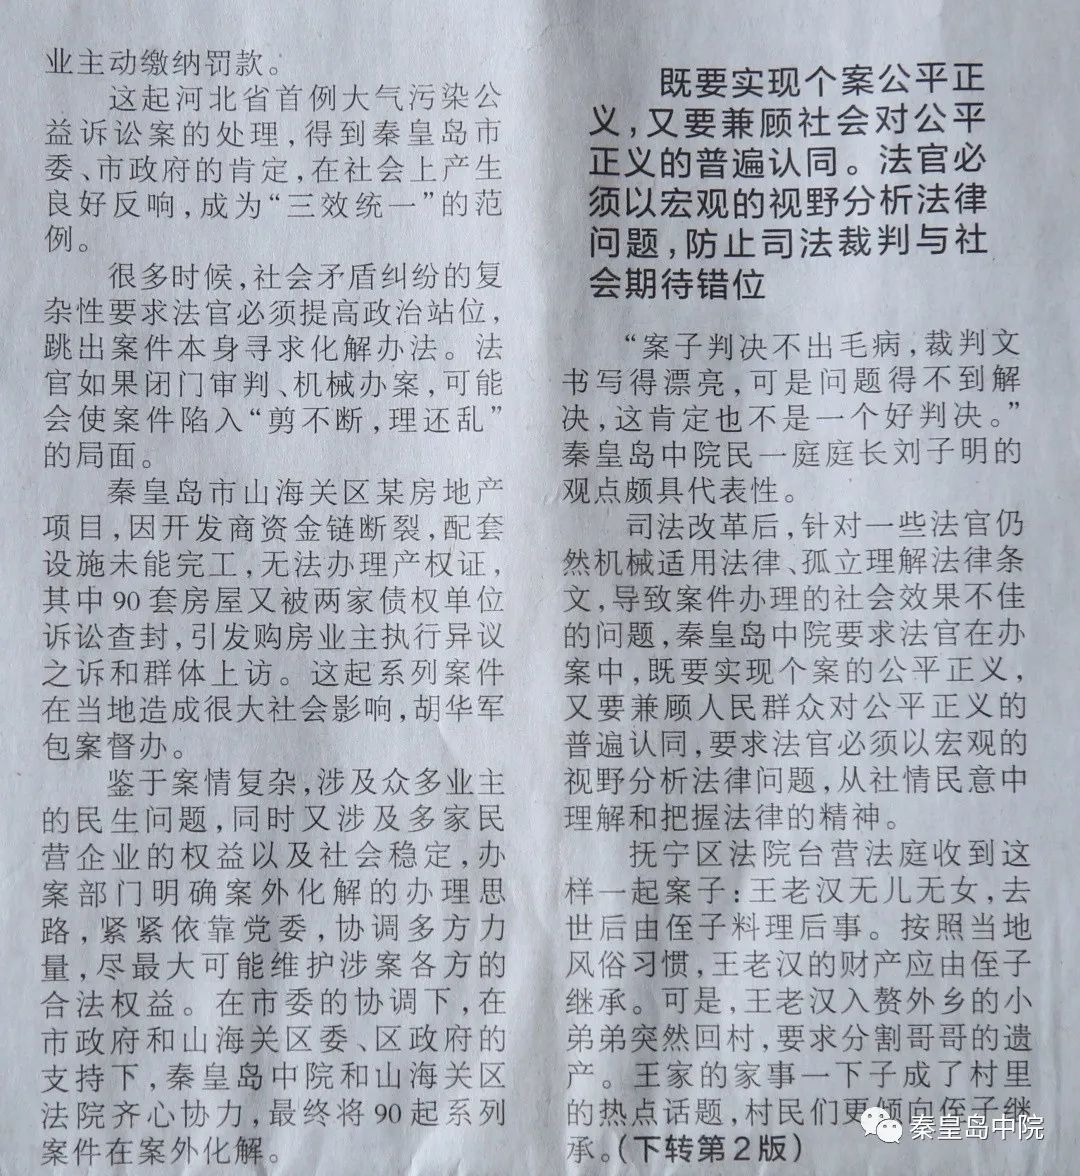 编者按:8月14日,《河北法制报》在头版头条位置以《正本清源,良法善治